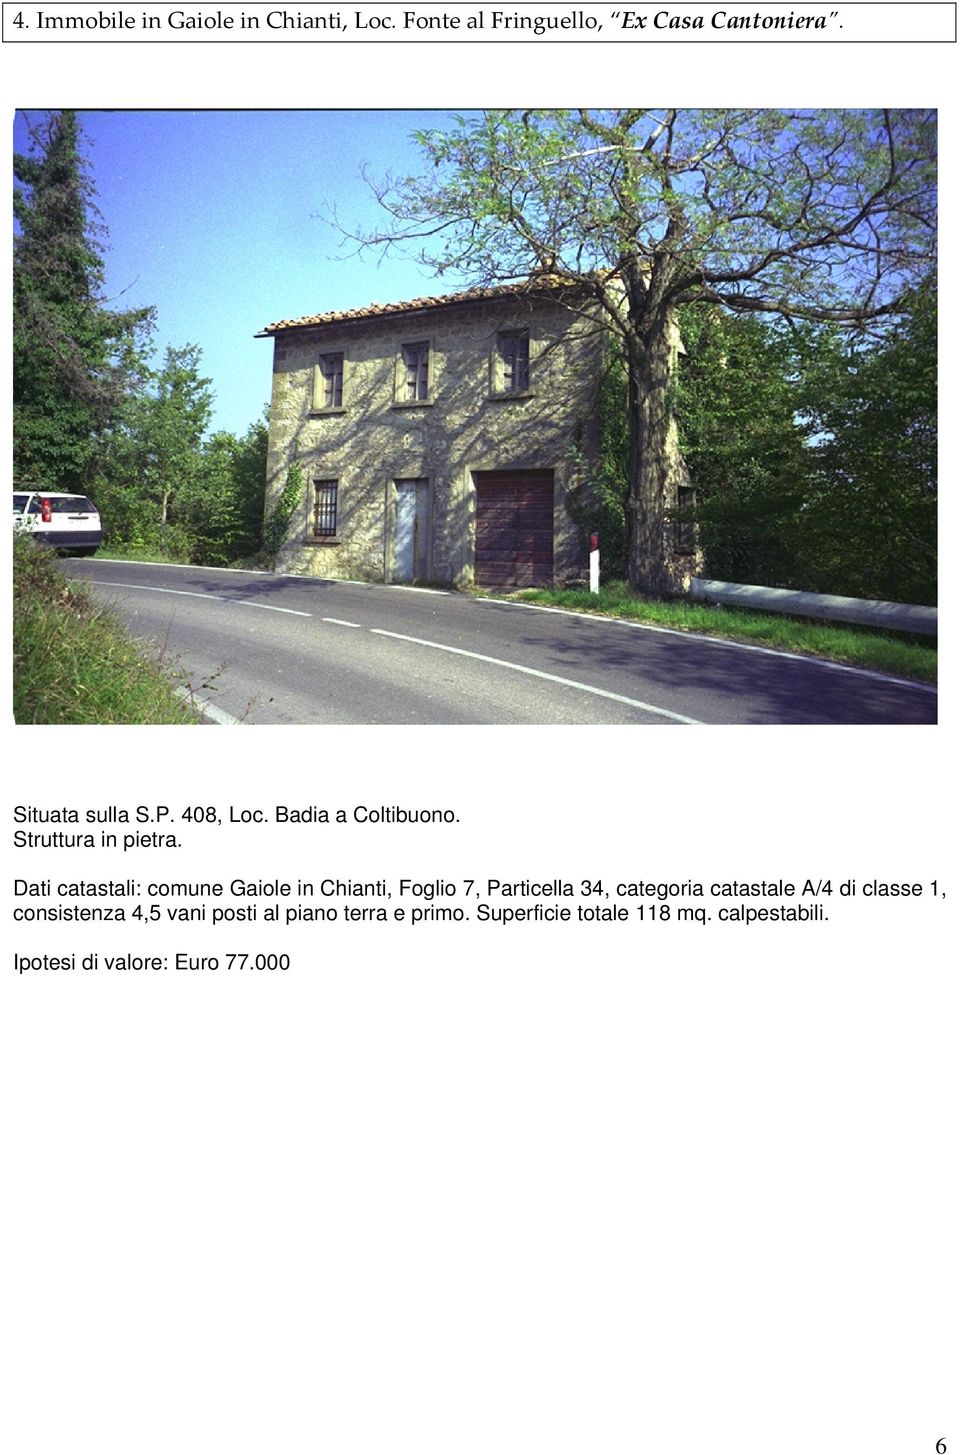 Dati catastali: comune Gaiole in Chianti, Foglio 7, Particella 34, categoria catastale A/4 di